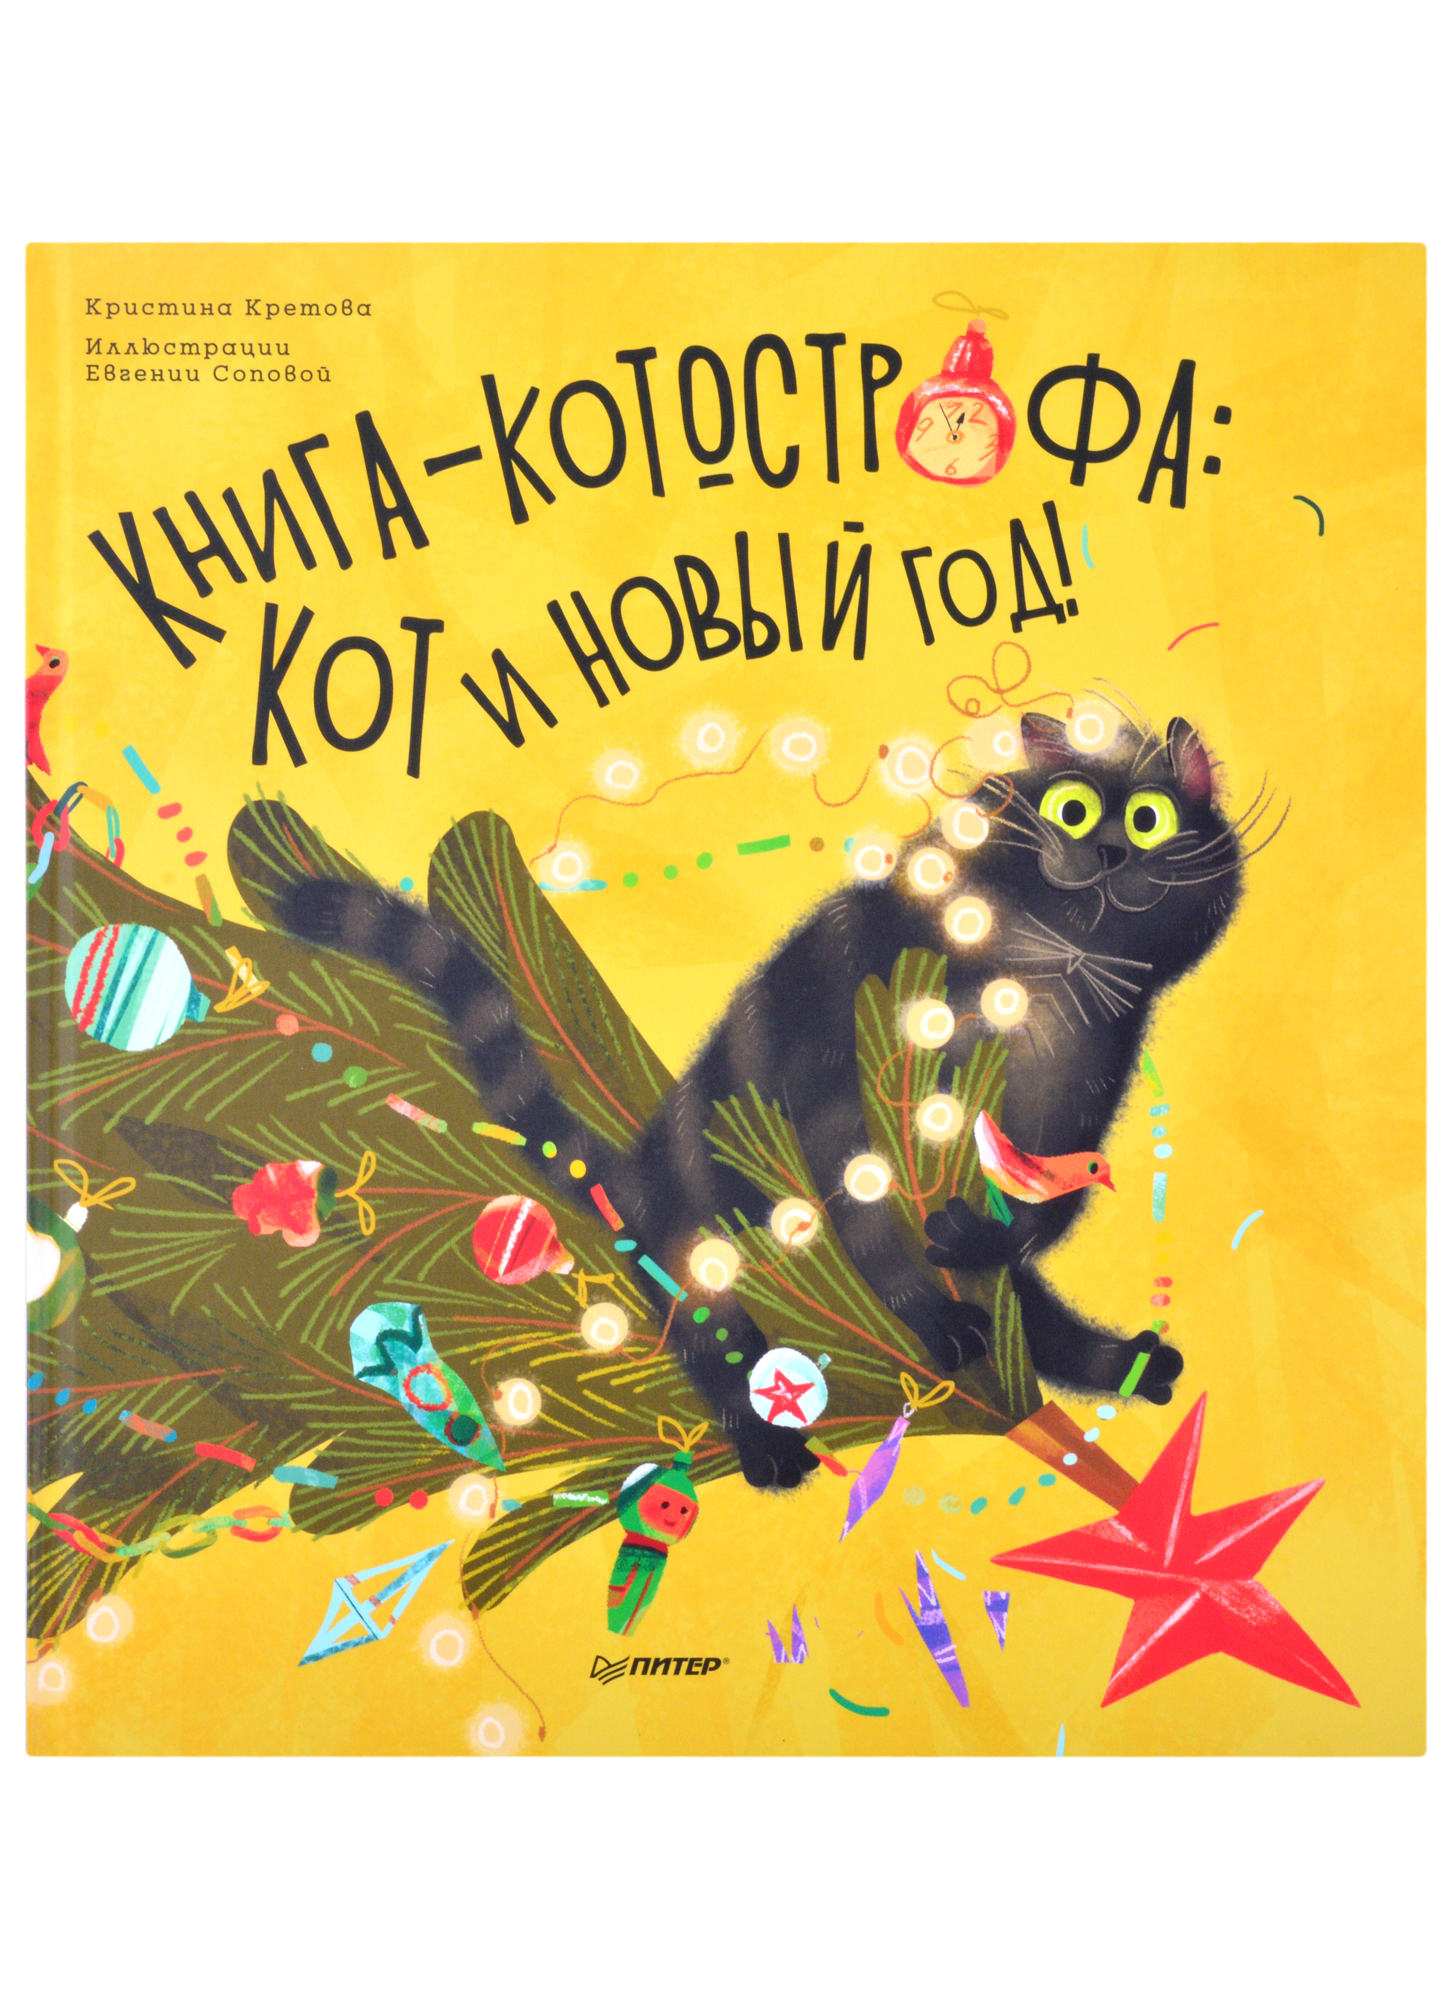 Кретова Кристина Александровна - Книга-котострофа: Кот и Новый год! Полезные сказки